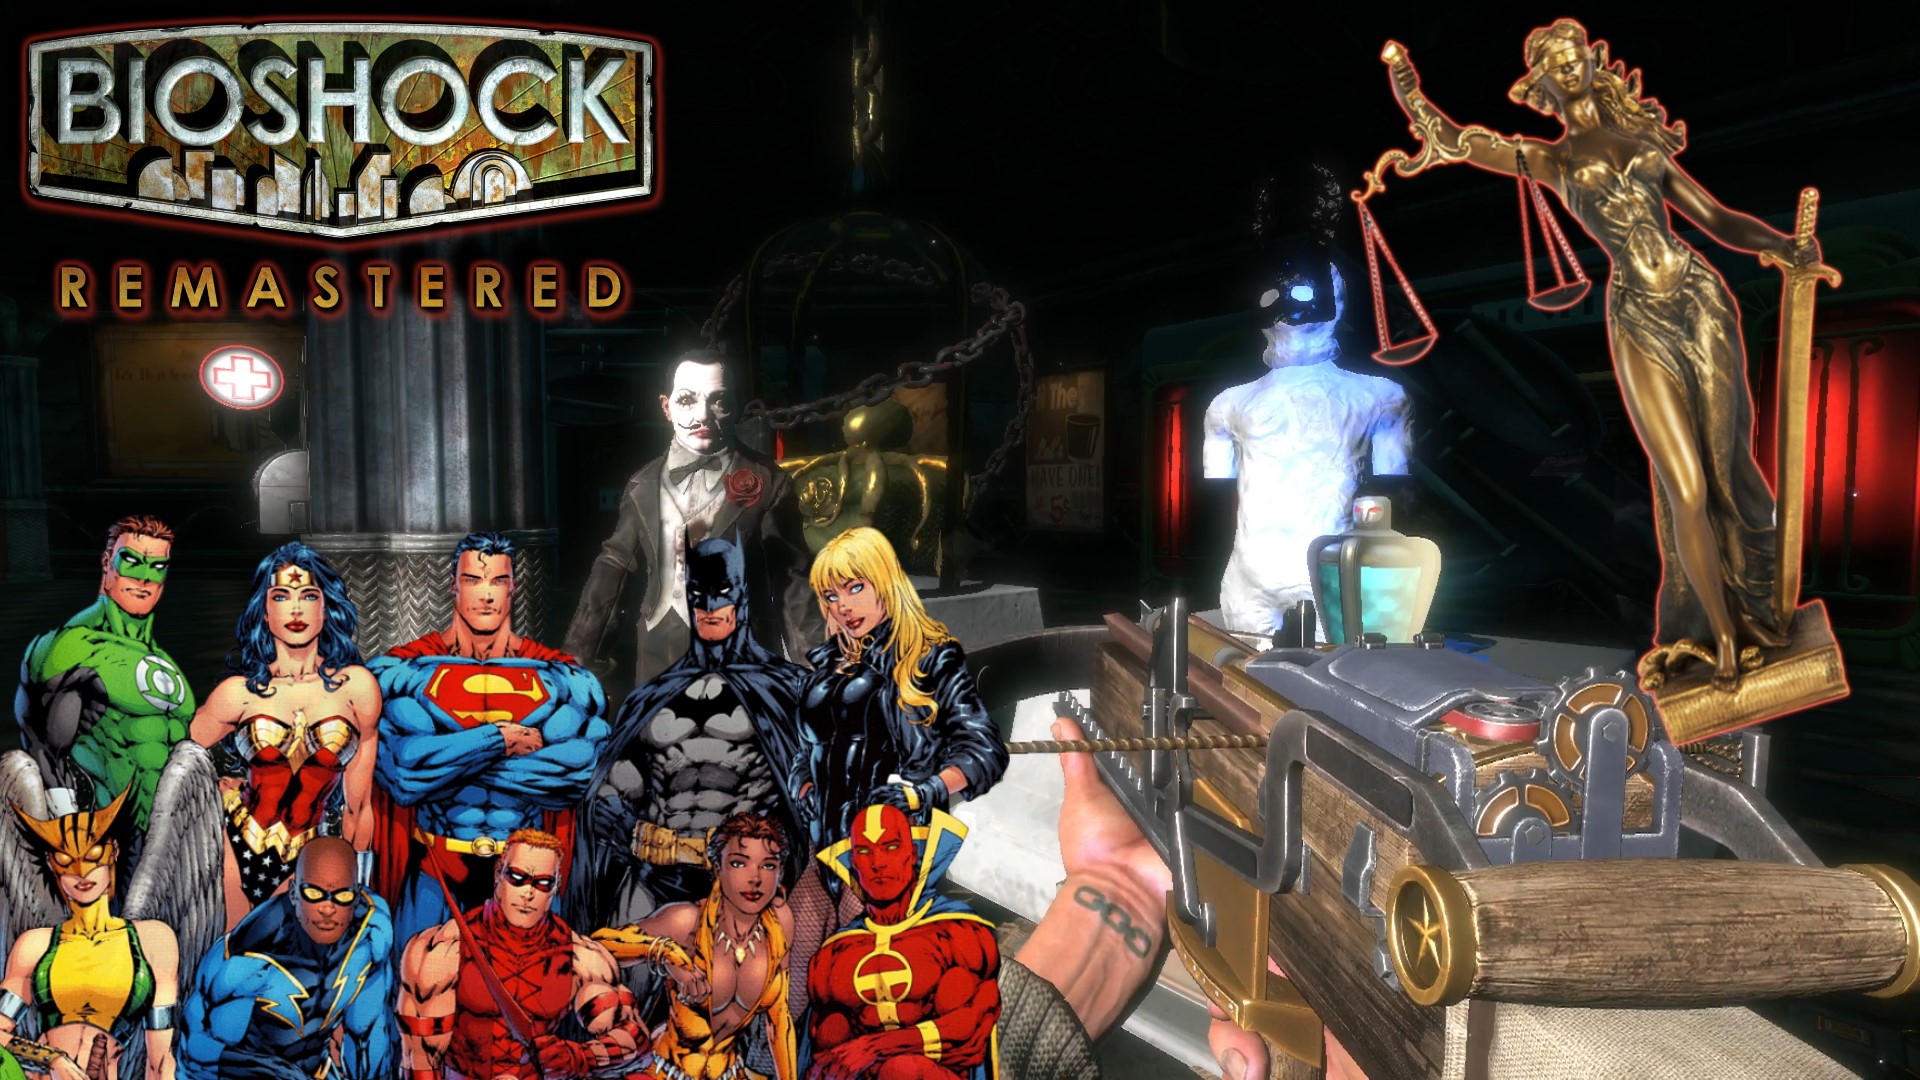 СПРАВЕДЛИВОСТИ ЧЕЛОВЕЧЕСКОЙ РАДИ! ▻ BioShock Remastered #13